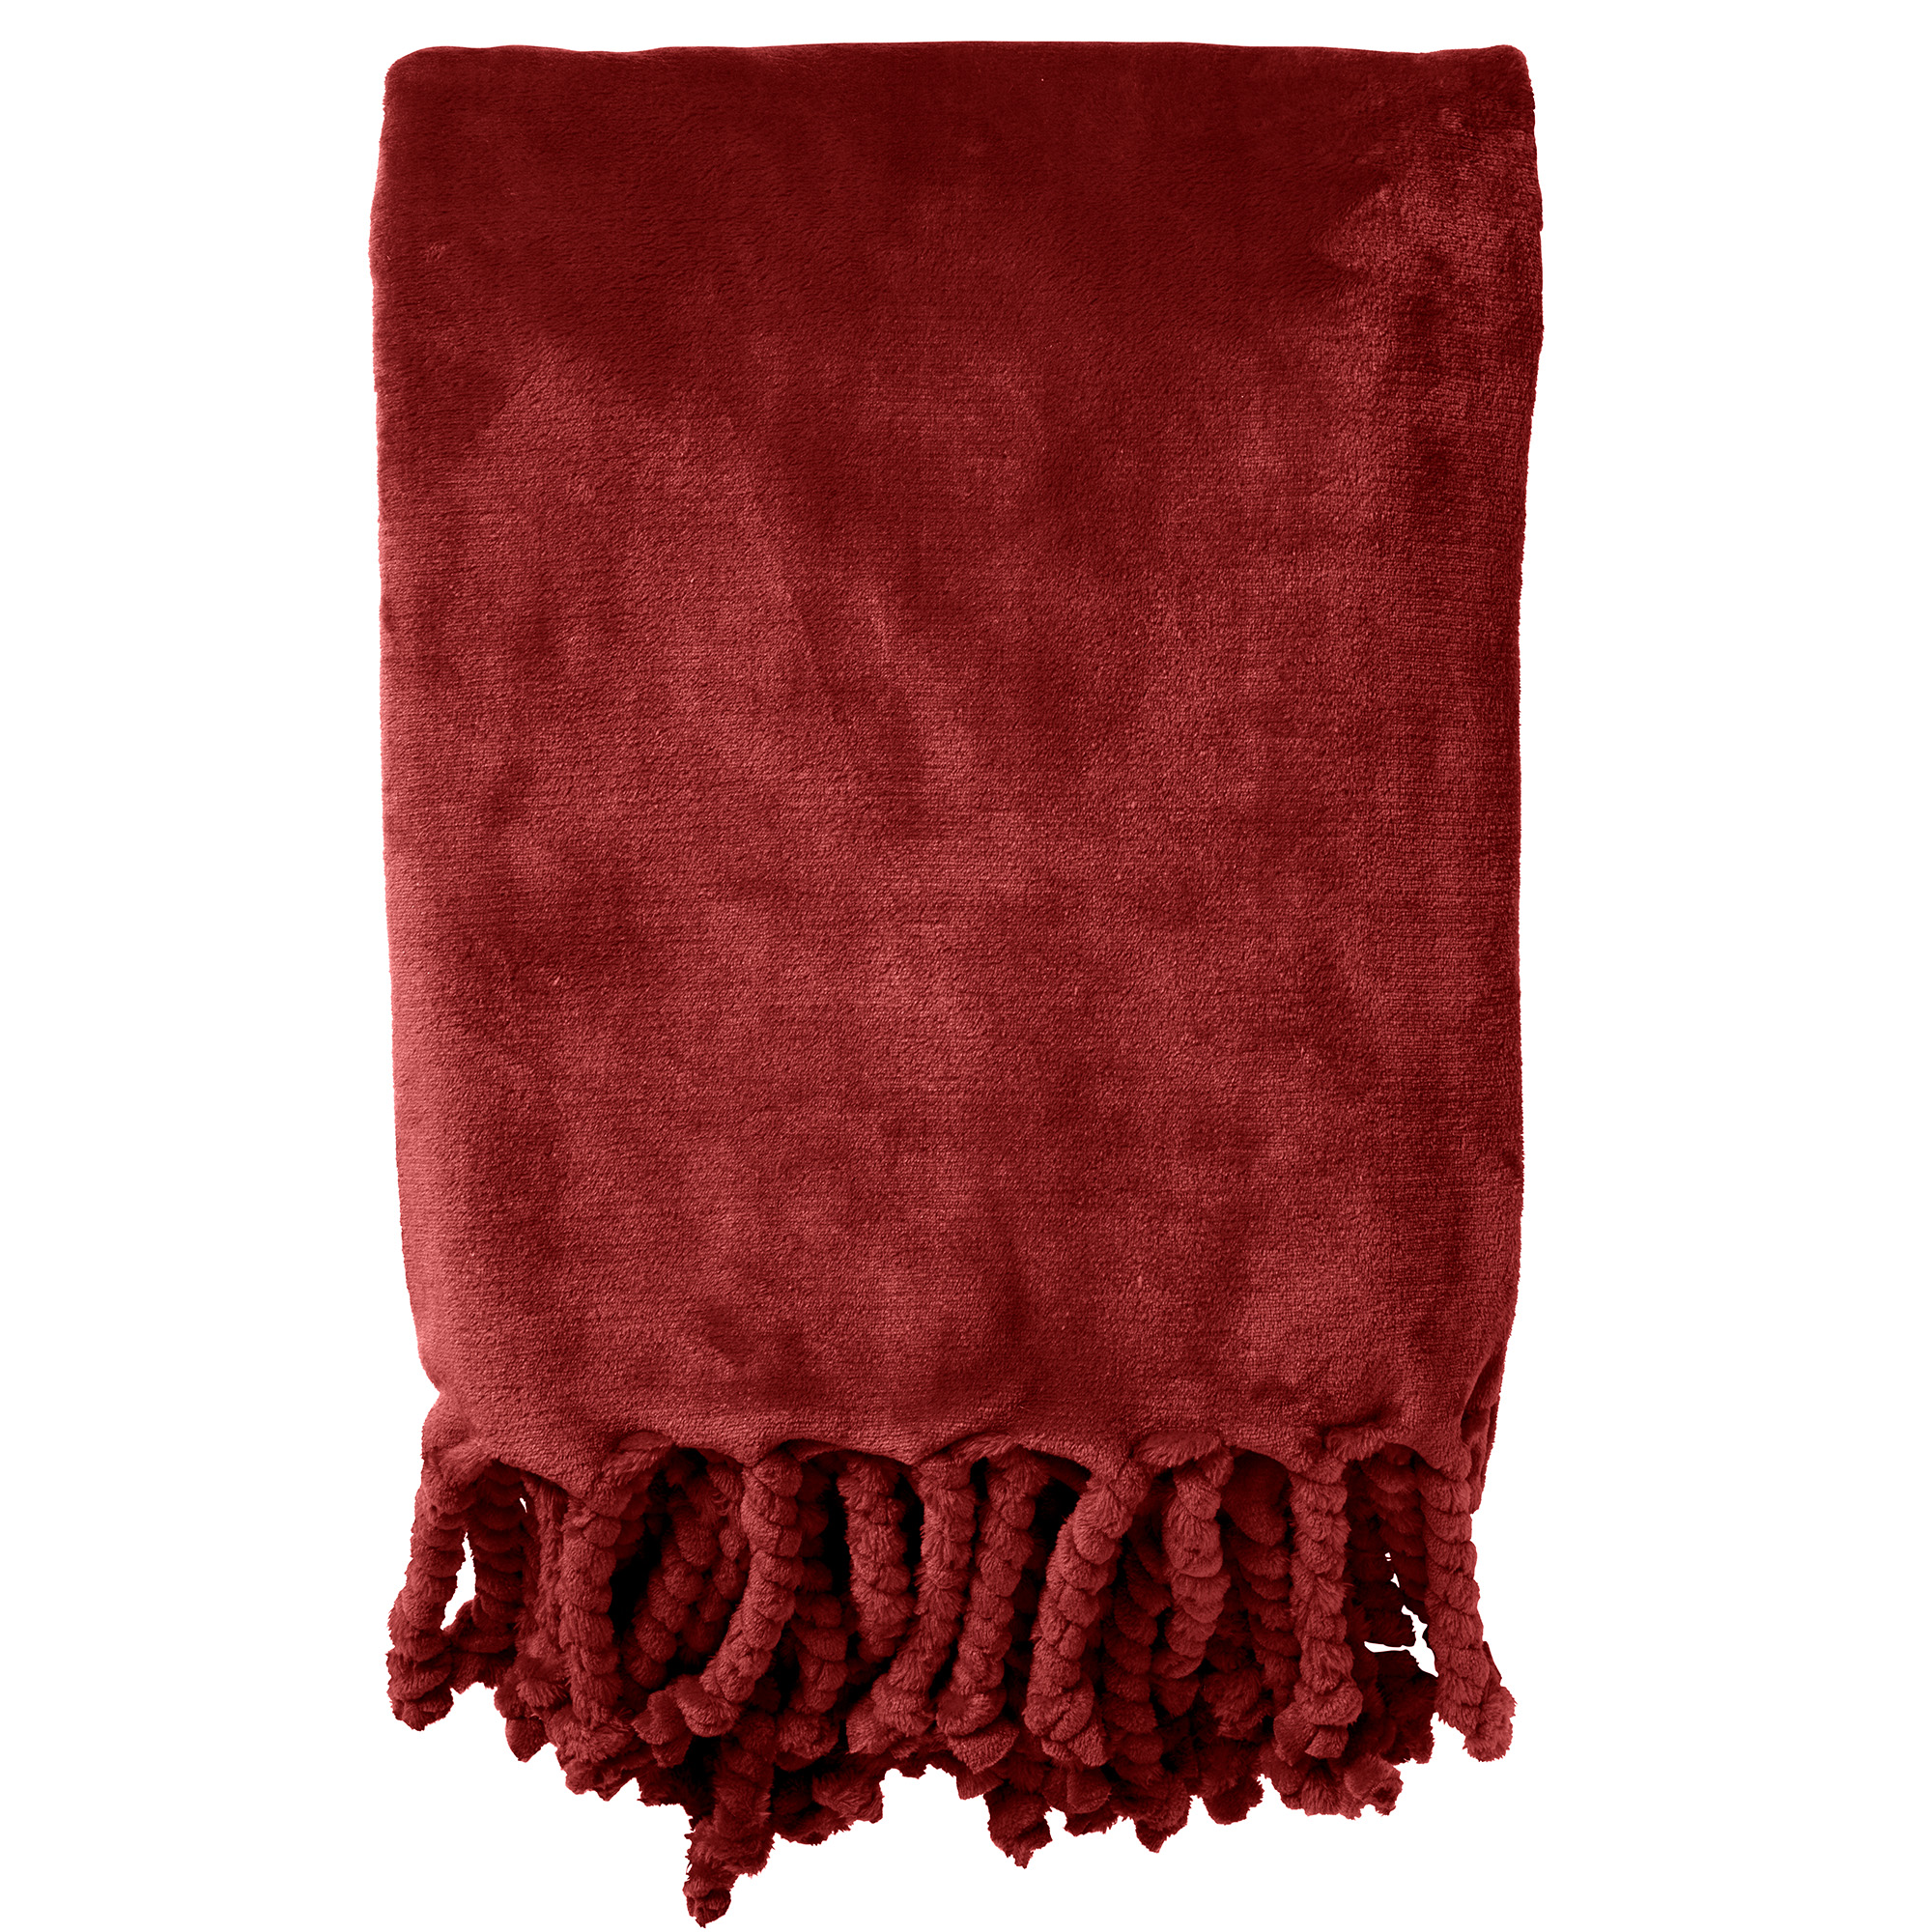 FLORIJN - Plaid van fleece 150x200 cm Merlot - rood - superzacht - met franjes